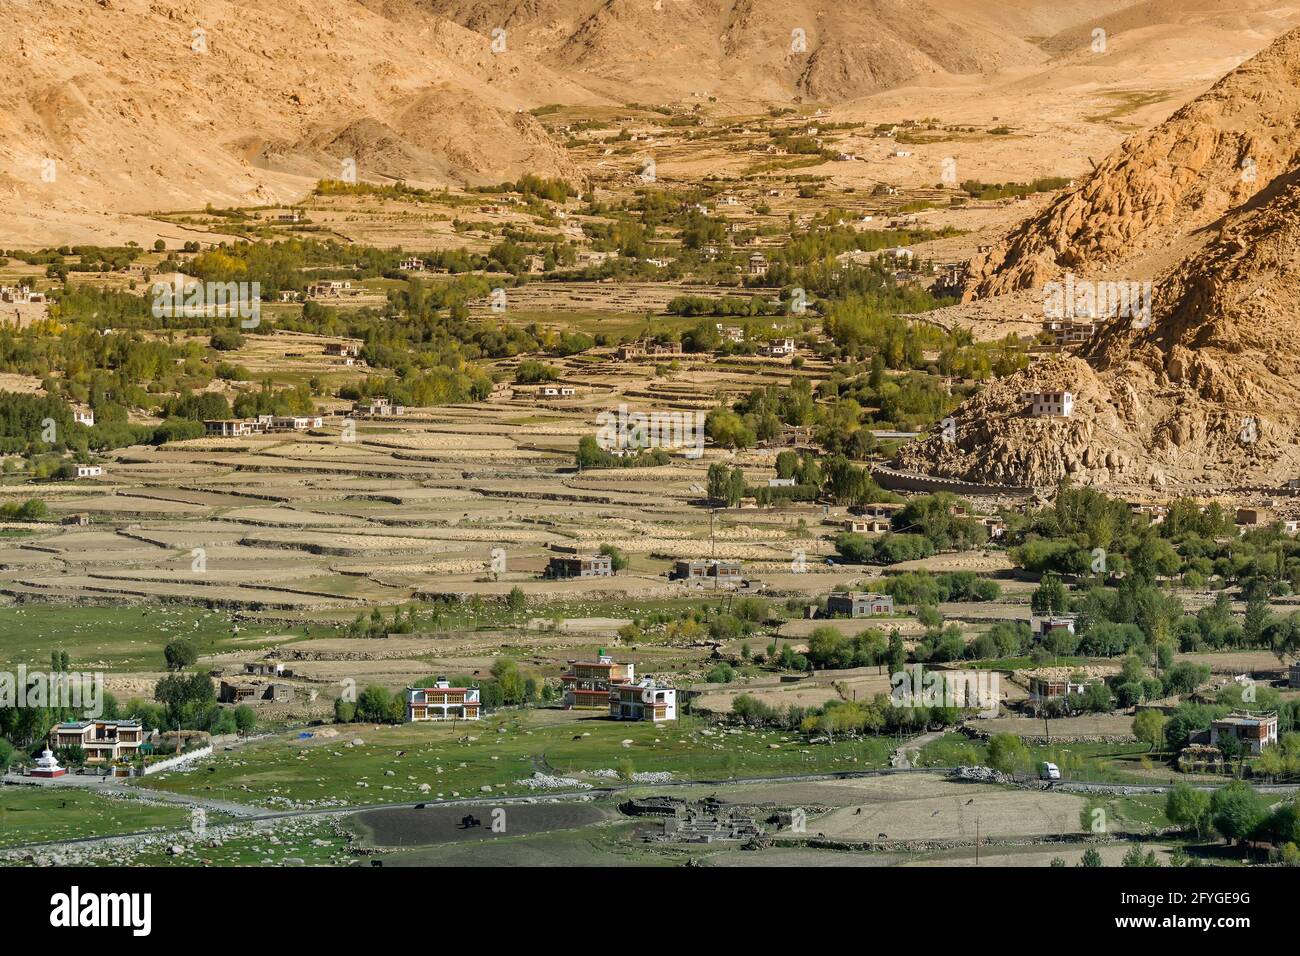 Terres agricoles vertes parmi les montagnes arides de Leh, Ladakh - image prise du col de Changla. Leh, Jammu-et-Cachemire, Inde Banque D'Images